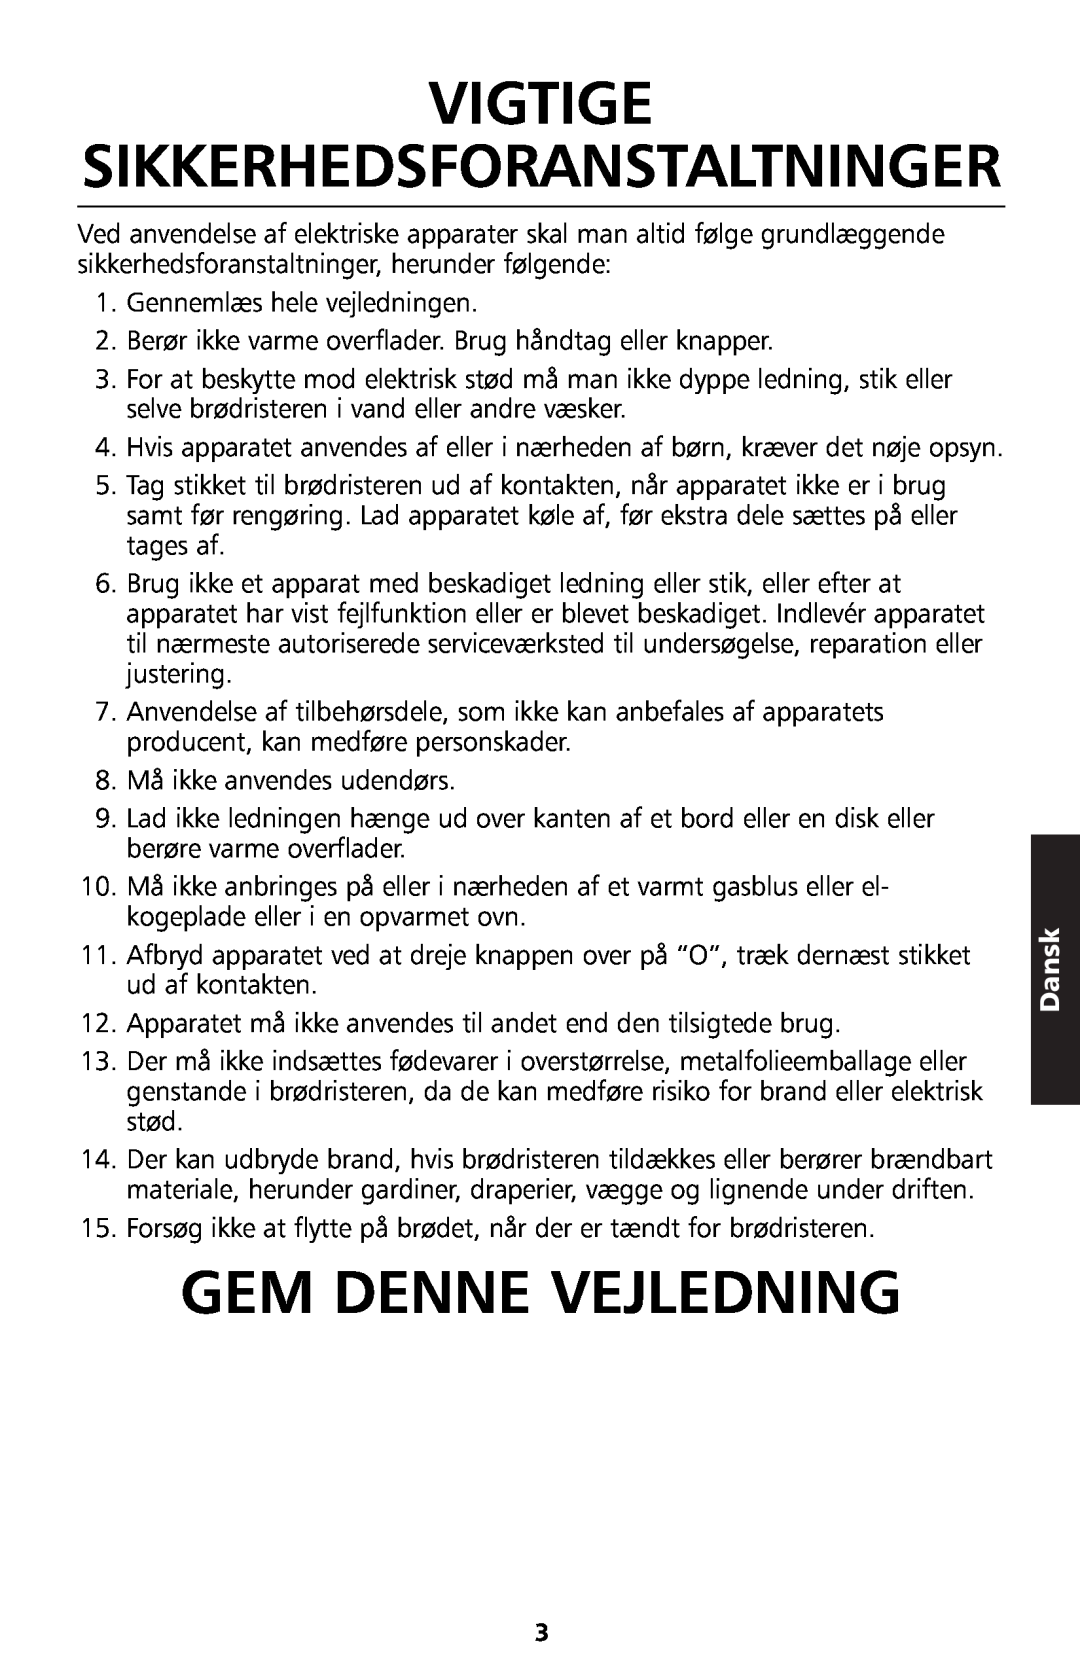 KitchenAid 5KTT890 manual Vigtige, Gem Denne Vejledning, Sikkerhedsforanstaltninger, Dansk 